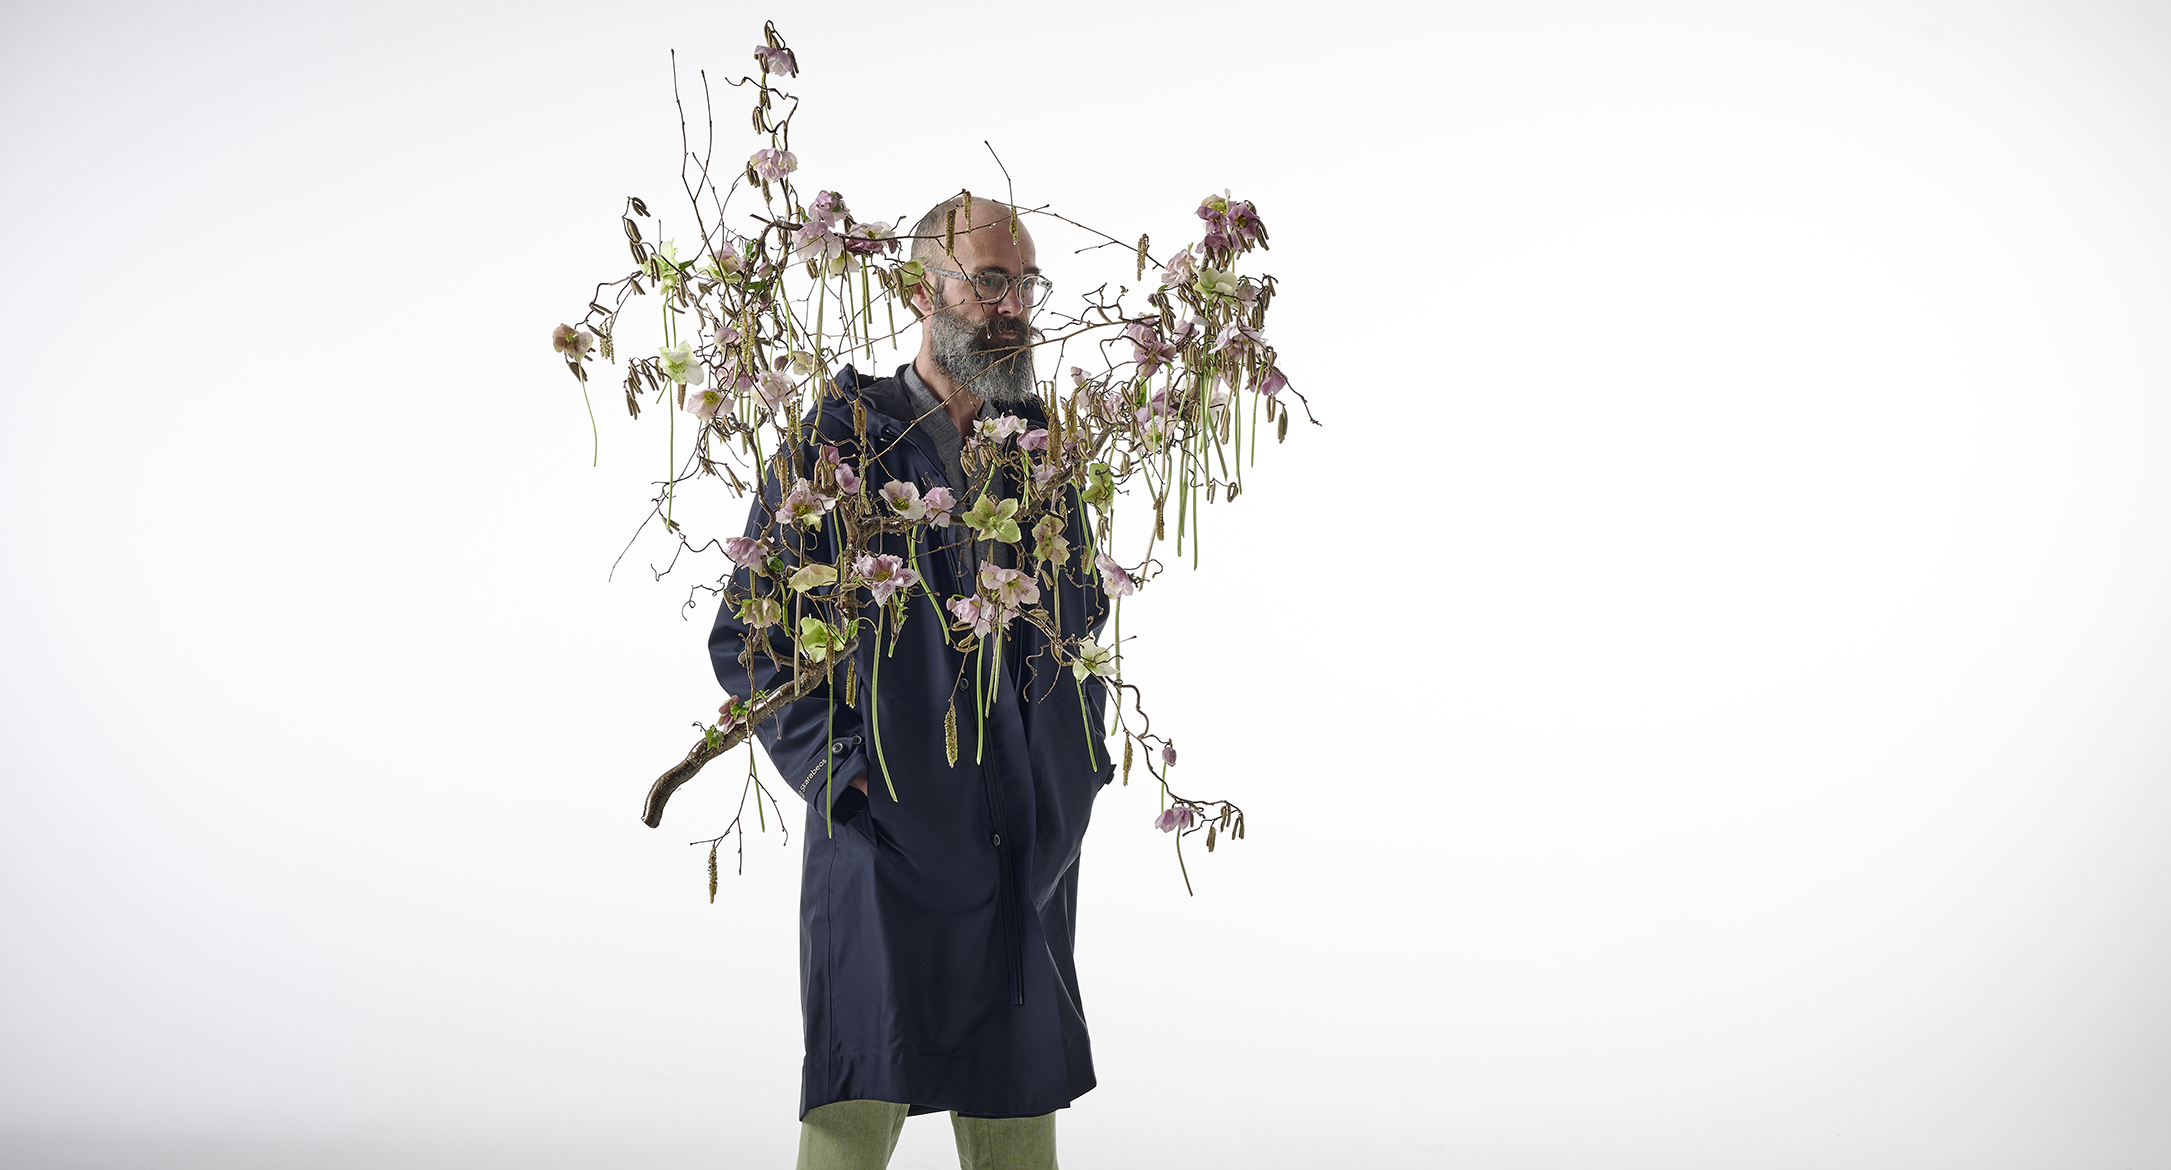 Mann stehend mit Regenjacke hinter einem floralen Objekt